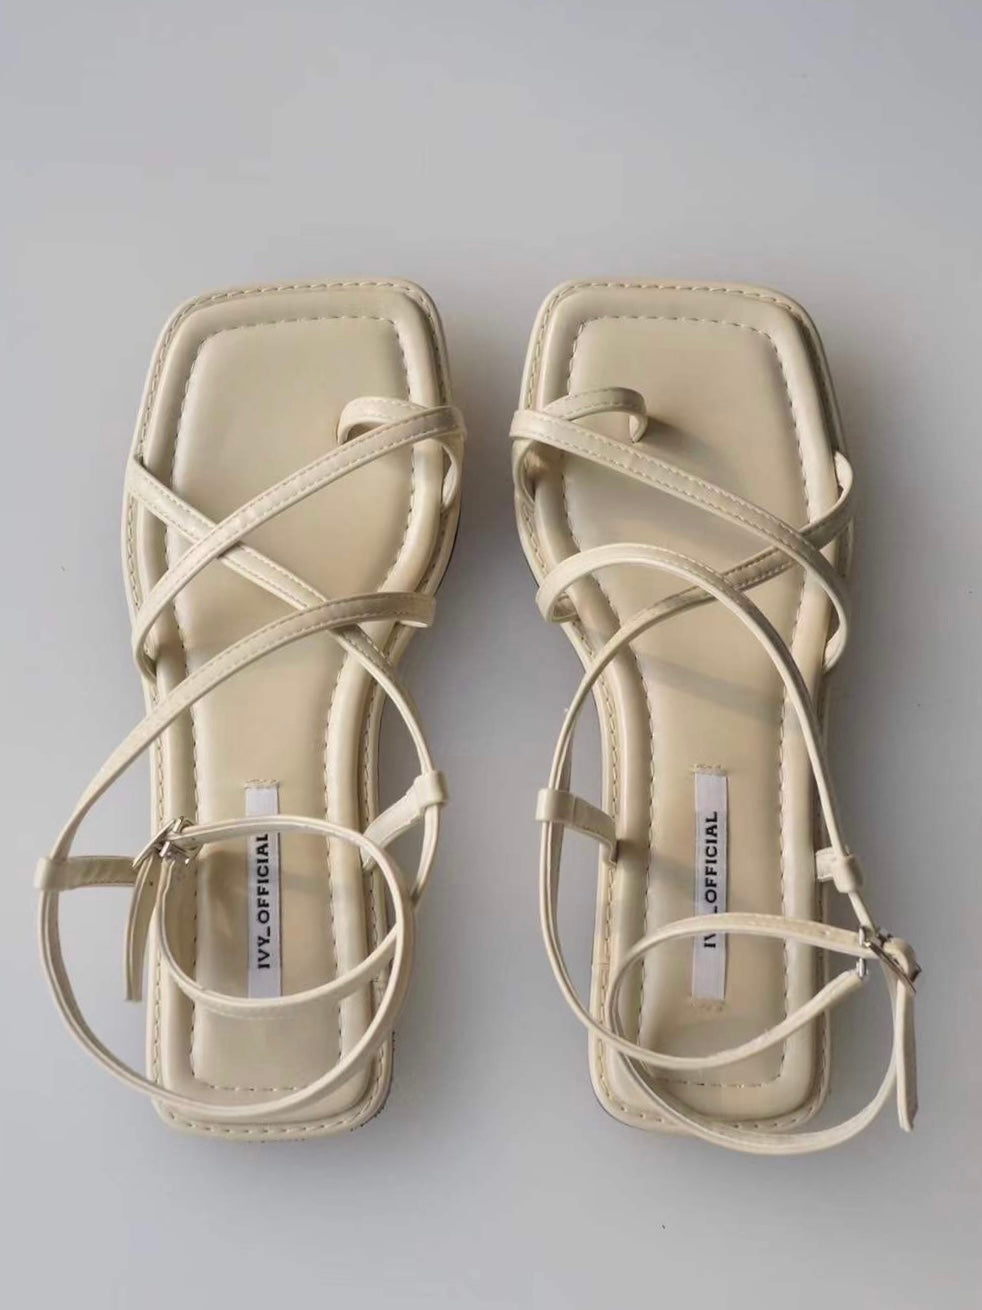 greek sandals